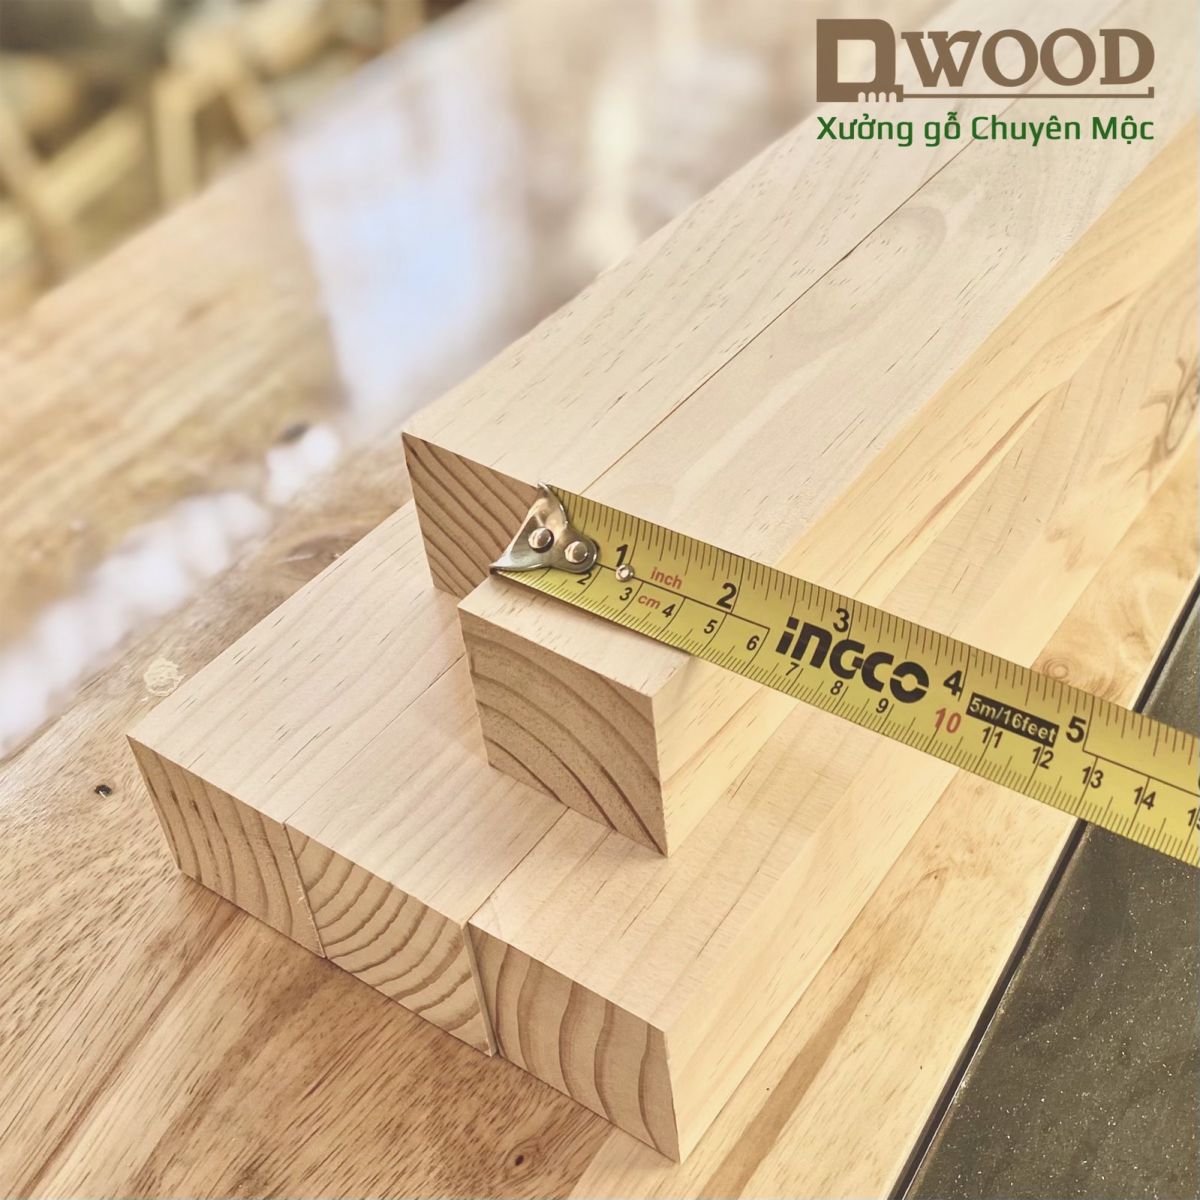 Thanh gỗ vuông Dwood 5x5 gỗ thông đã xử lý - Dài 100cm